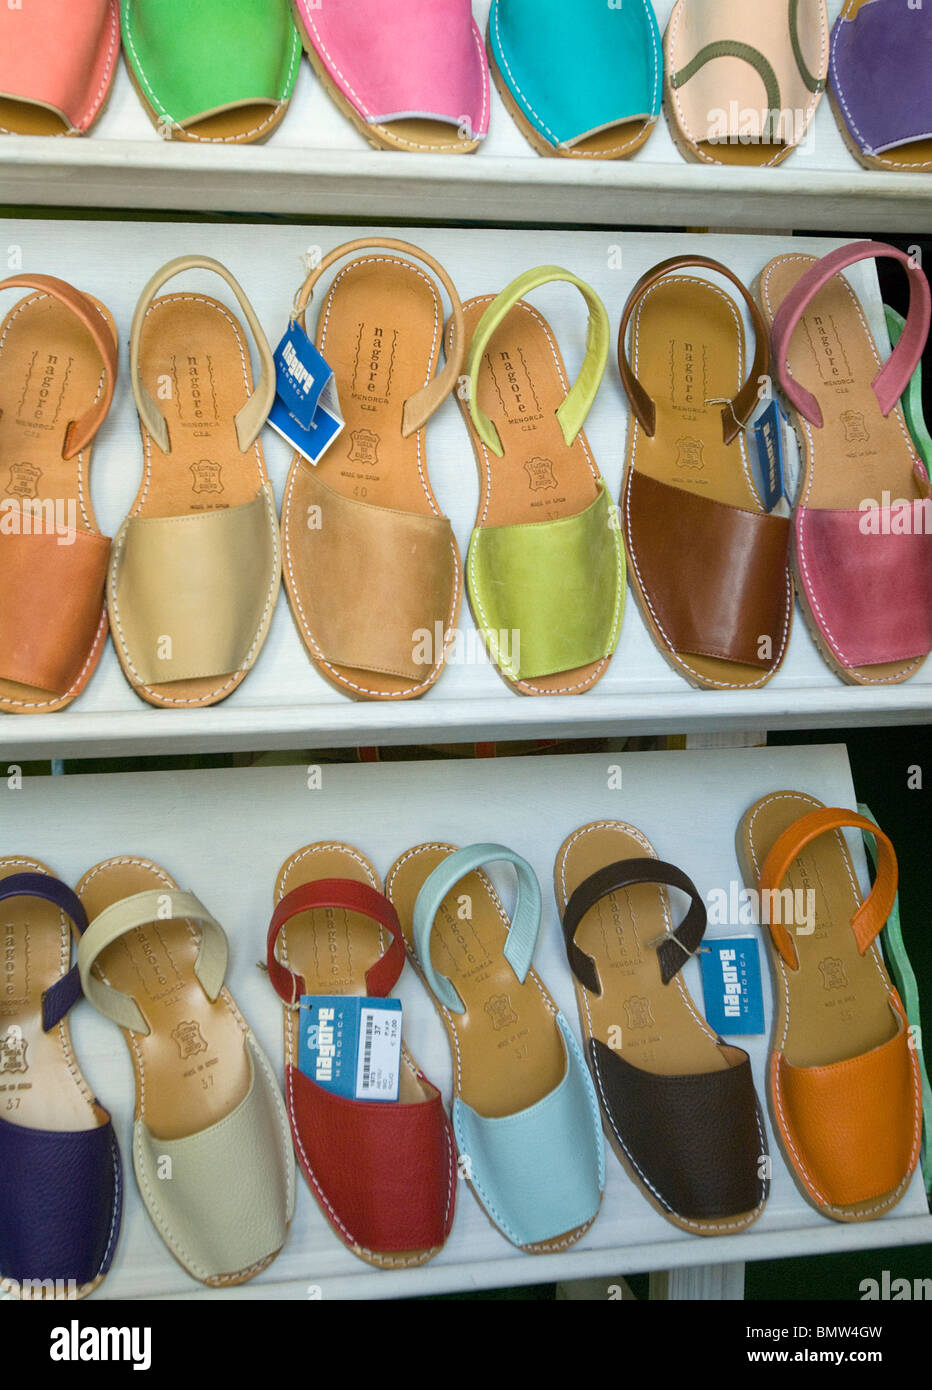 Locally produced Menorquina shoes for sale, Mahon, Menorca, Balearics, Spain Stock Photo